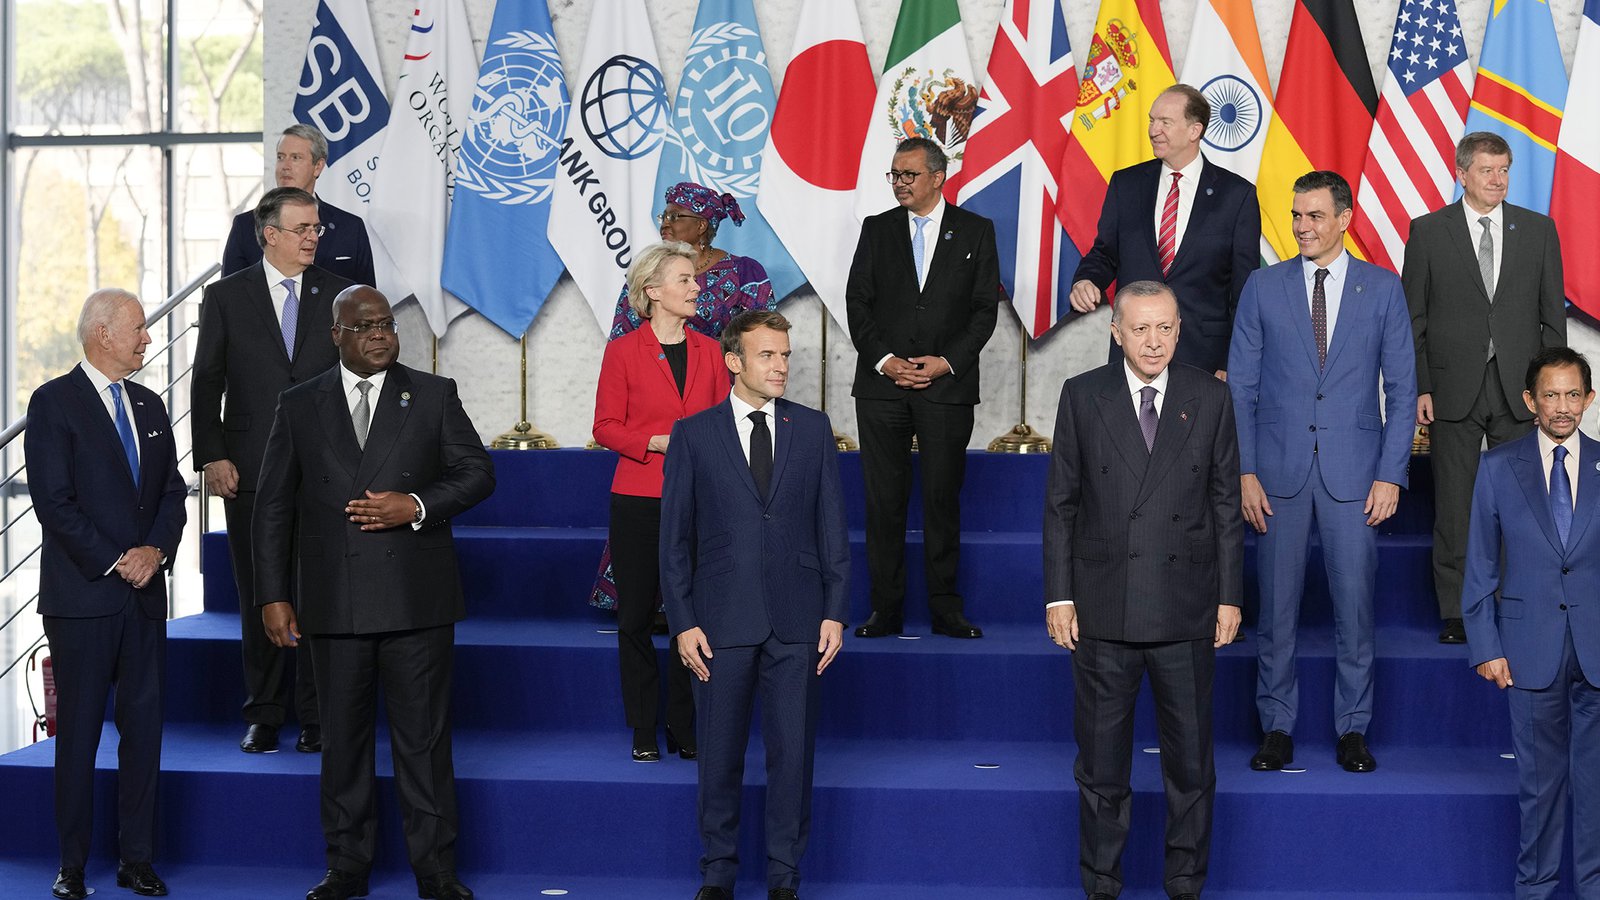 G20 Leaders' Summit held in 2021 in Rome